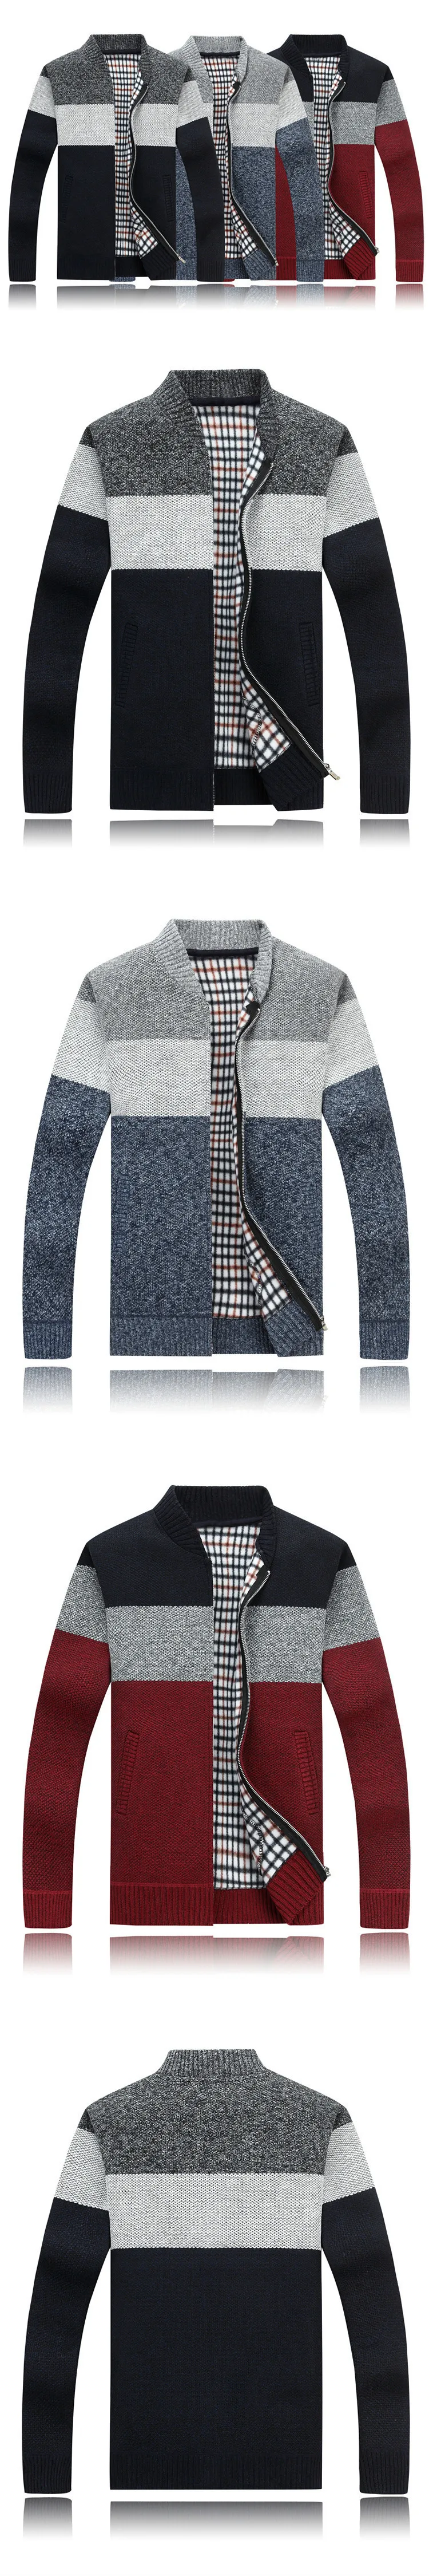 Осень-зима кашемир из флиса свитера на подкладке новые Для мужчин толстый свитер полосатый воротник-стойка на молнии свитер пальто верхняя